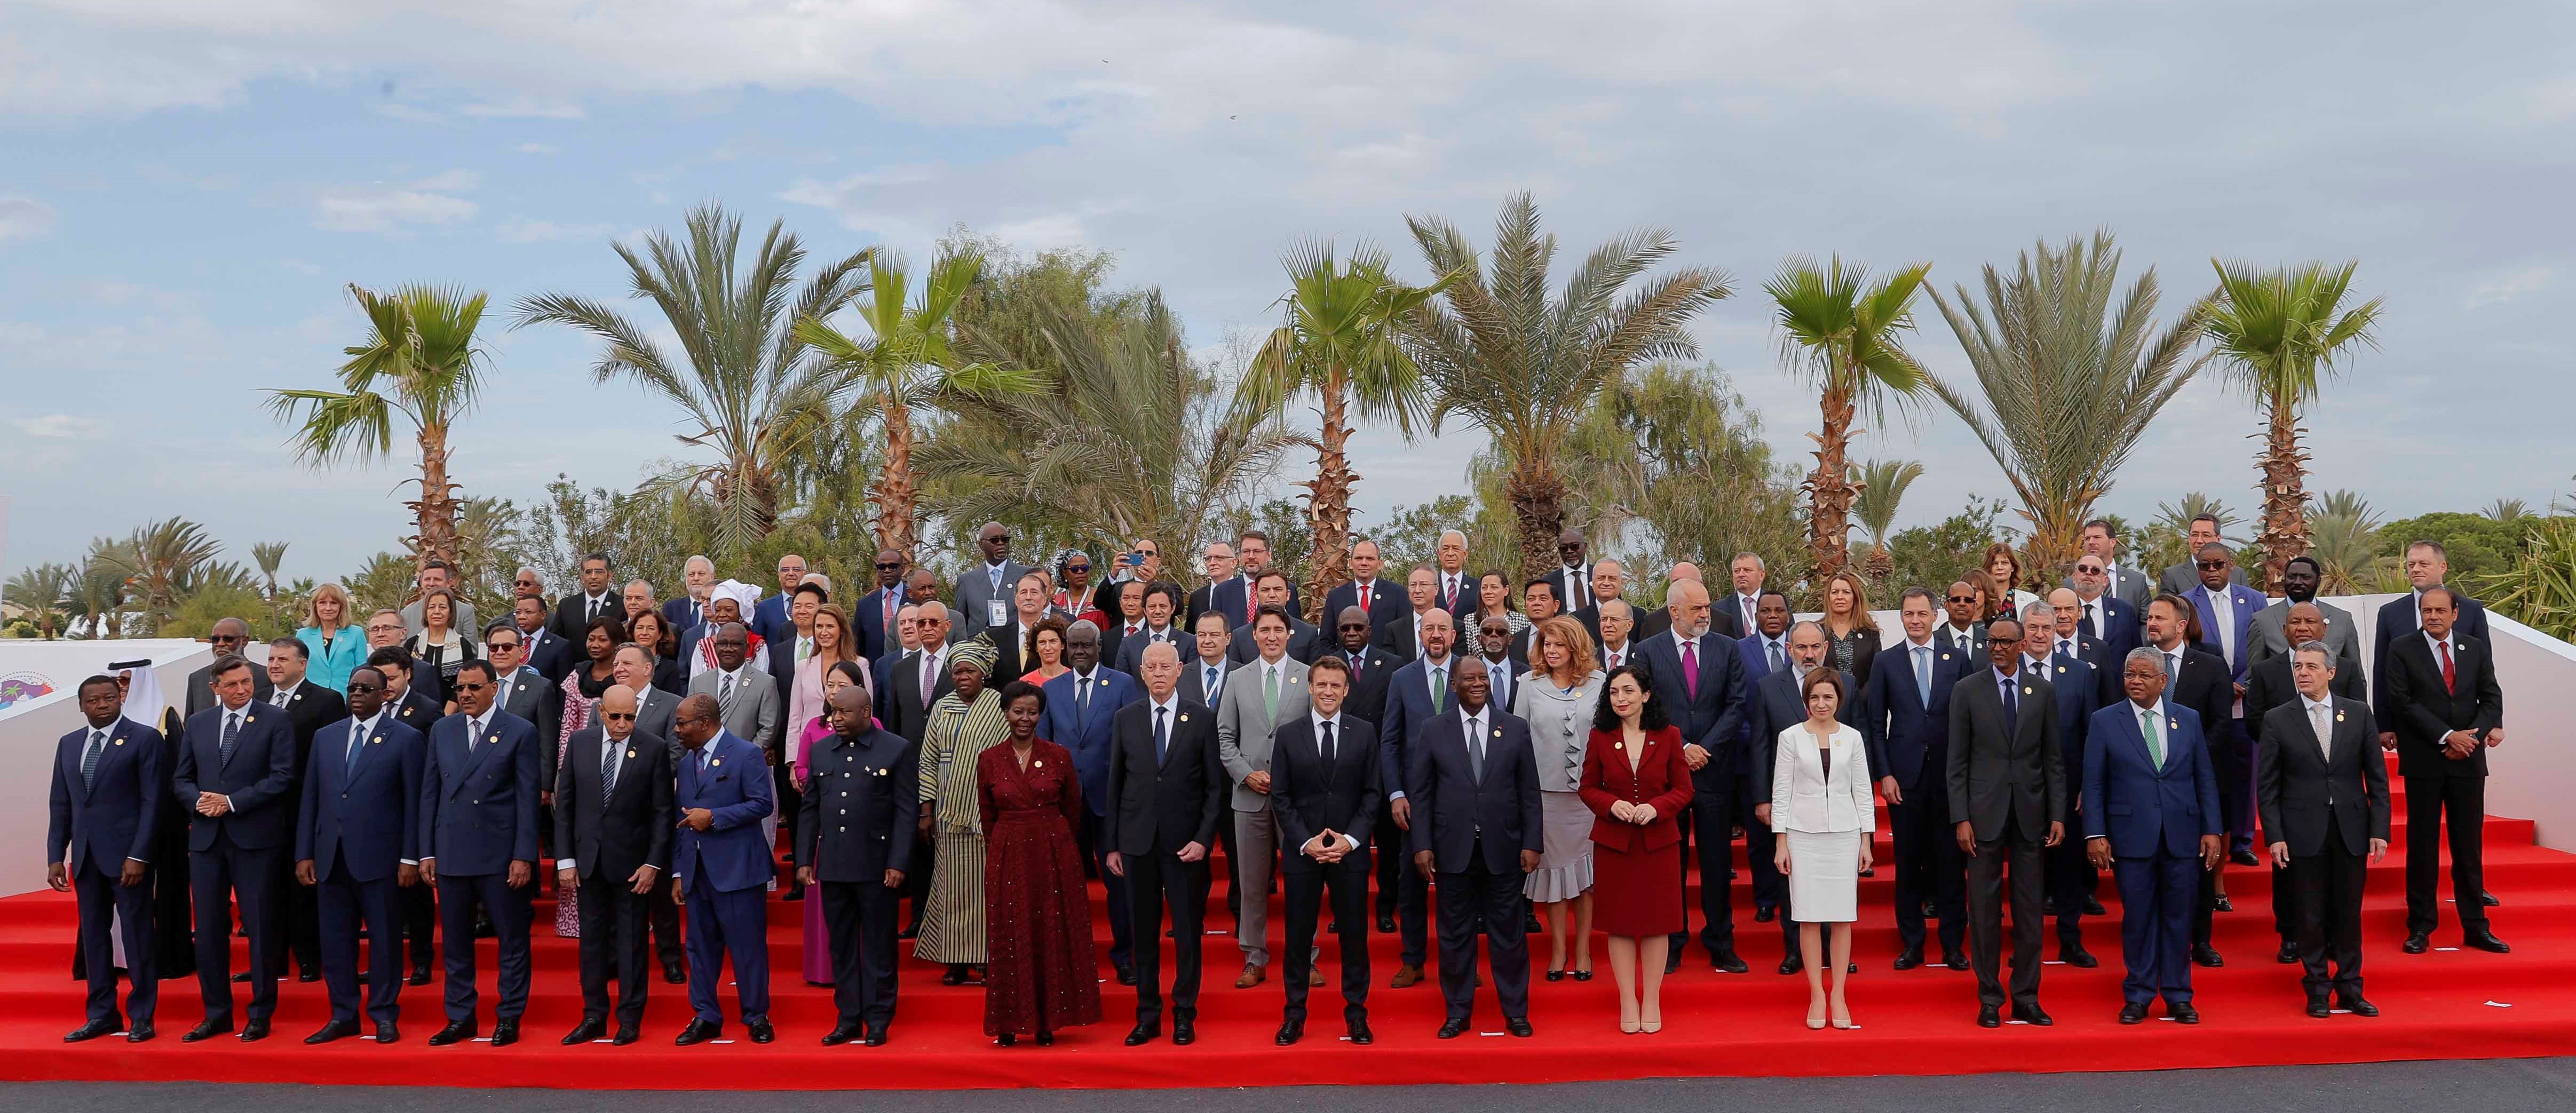 Presidentja Osmani mori pjesë në hapjen e samitit të Frankofonisë  